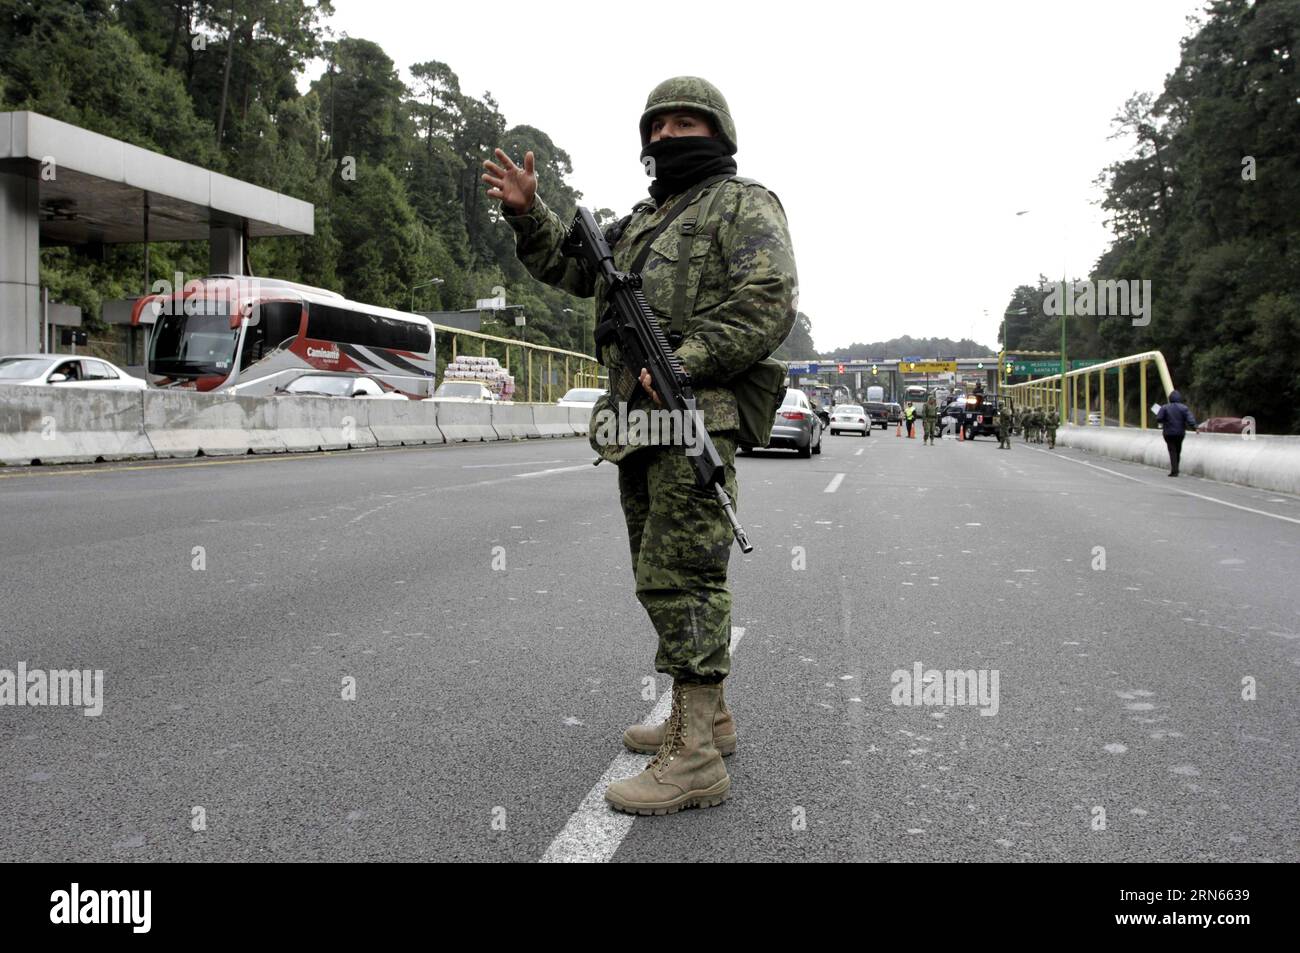 AKTUELLES ZEITGESCHEHEN Mexiko : Suche nach Joaquin El Chapo Guzman un soldat de l'armée mexicaine monte la garde à un péage de la route Mexico-Toluca, dans la ville de Mexico, capitale du Mexique, le 12 juillet 2015. Joaquin El Chapo Guzman, le roi du cartel de la drogue mexicain, s'est évadé de prison par un tunnel de plus de 1,5 km de long sous sa cellule, ont déclaré dimanche les autorités. Guzman, chef du cartel de la drogue de Sinaloa, a disparu samedi soir de la prison de haute sécurité Altiplano à l'extérieur de Mexico, selon la Commission de sécurité nationale. MEXICO-MEXICO CITY-SECURITY-GUZMAN LOERA JAIRXCABRERA PUB Banque D'Images